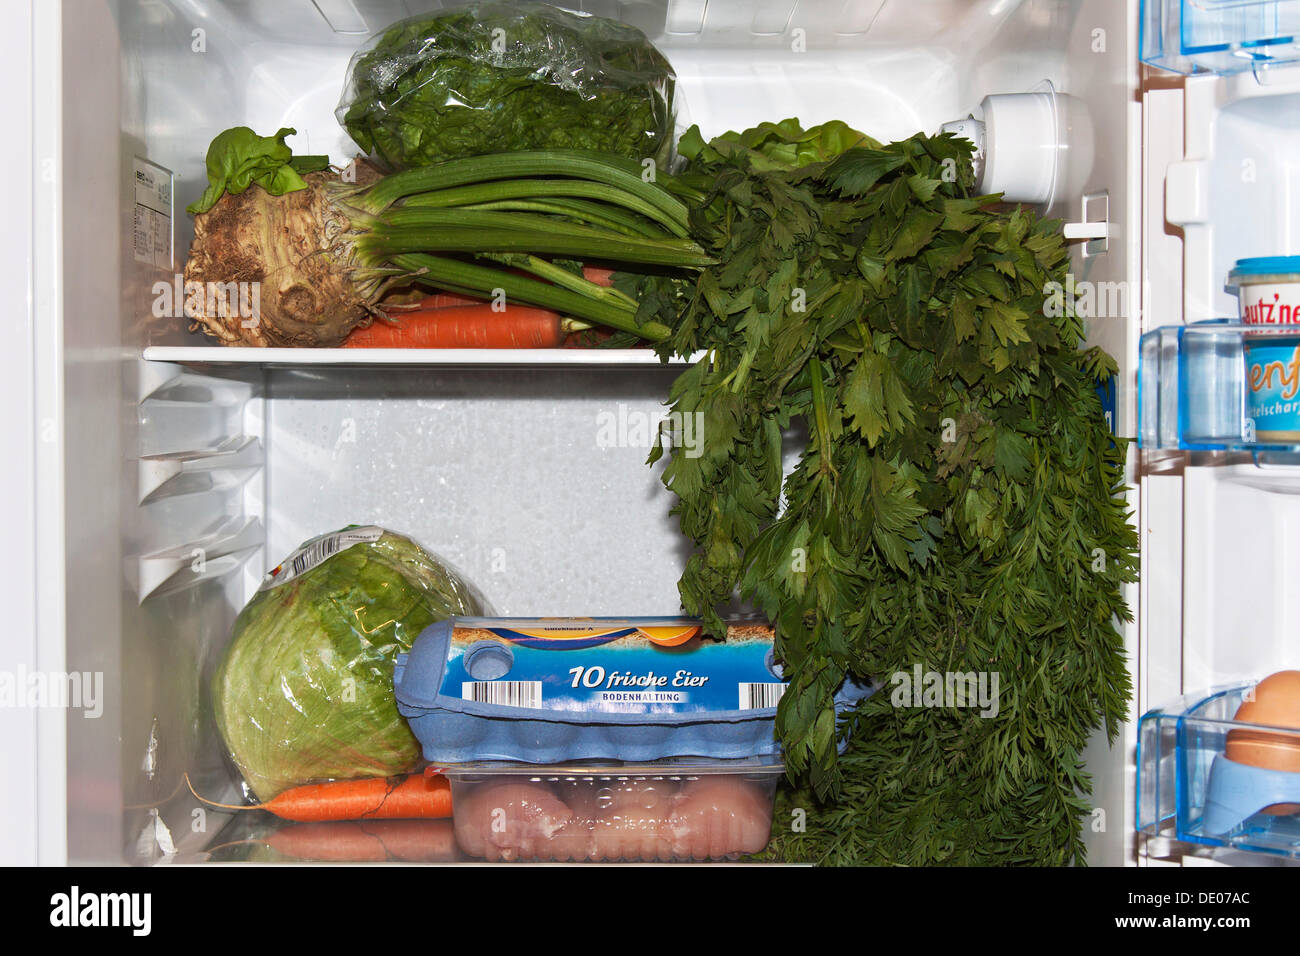 Lebensmittel an der falschen Stelle in einem Kühlschrank gelagert Stockfoto